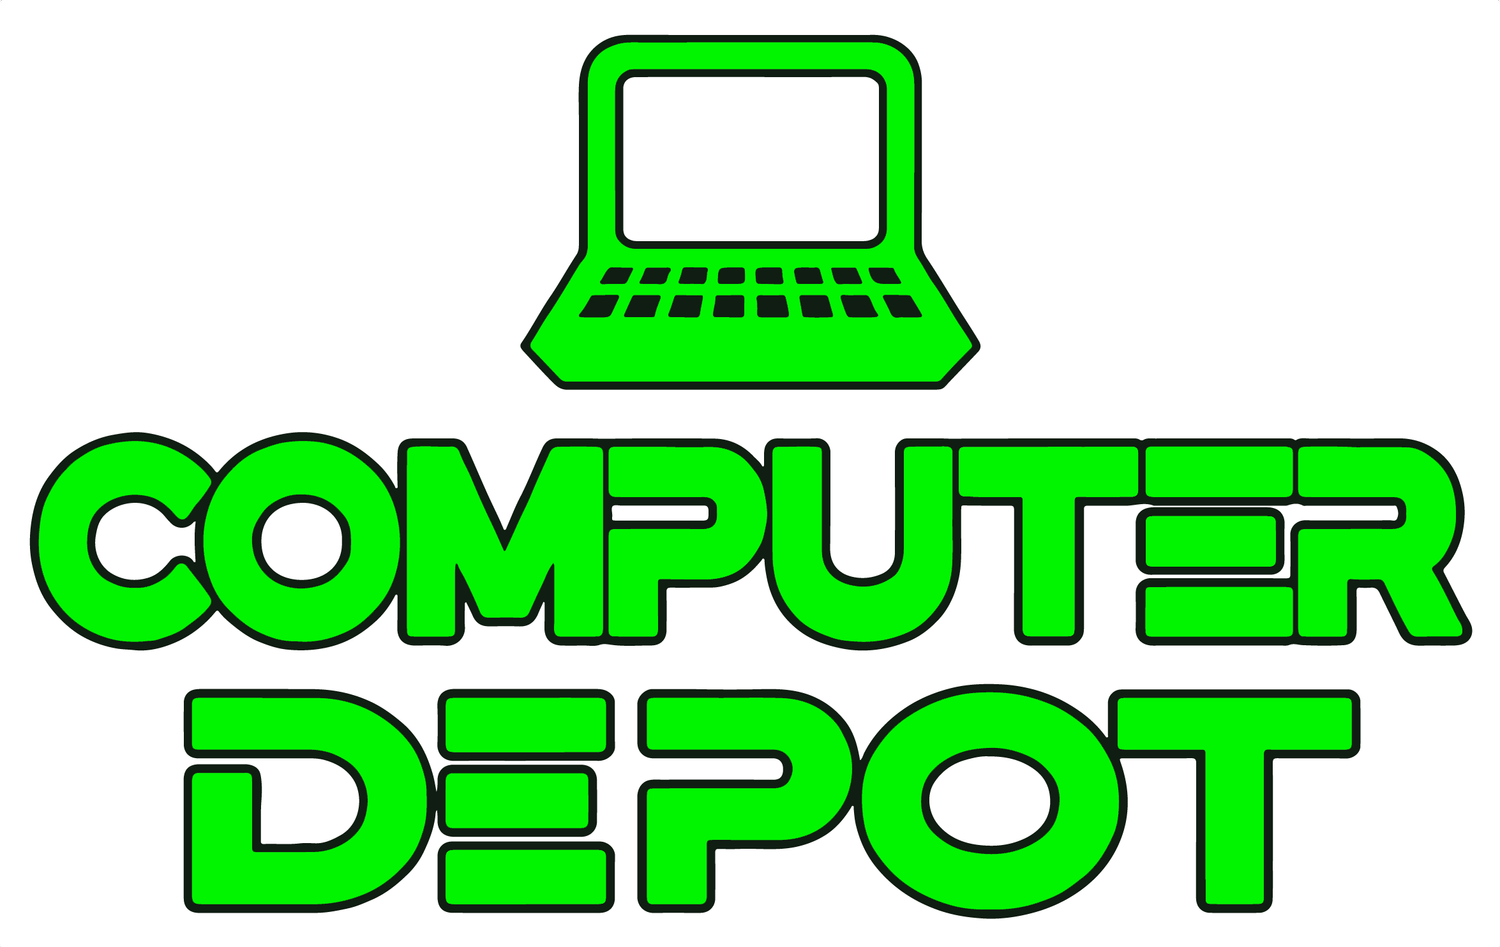 Computer Depot